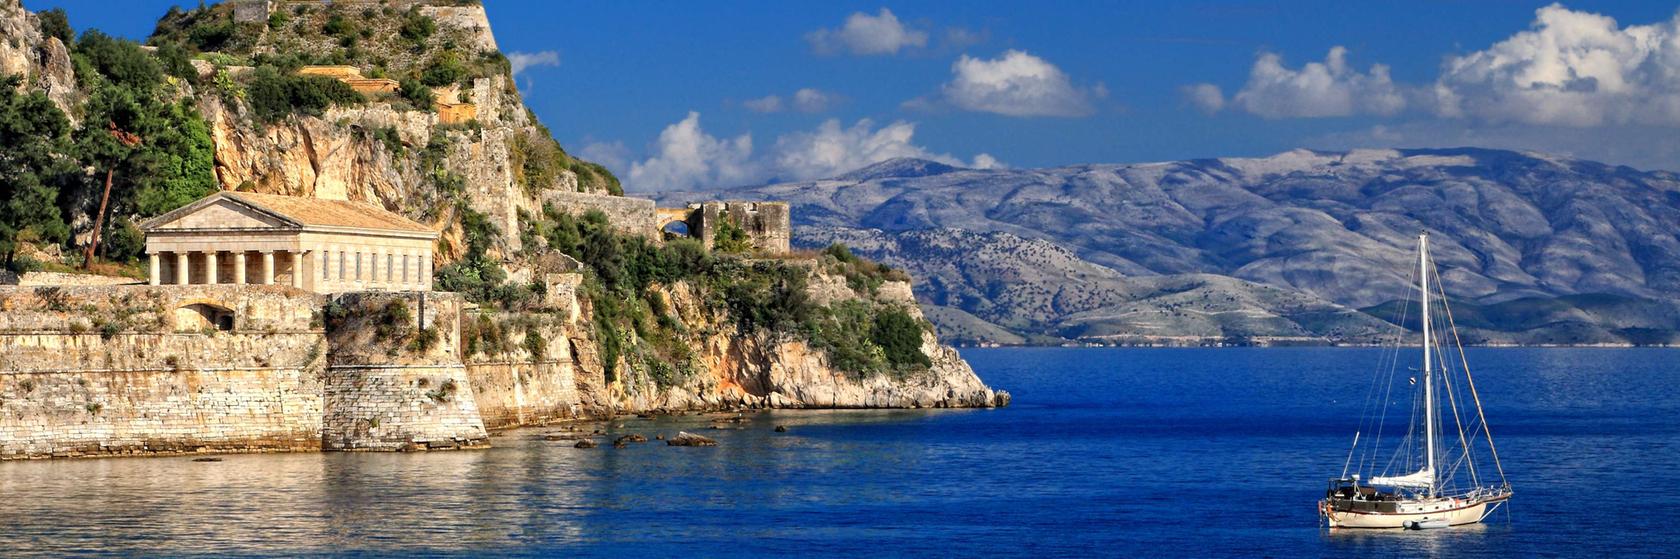 Zábava a volný čas na Korfu